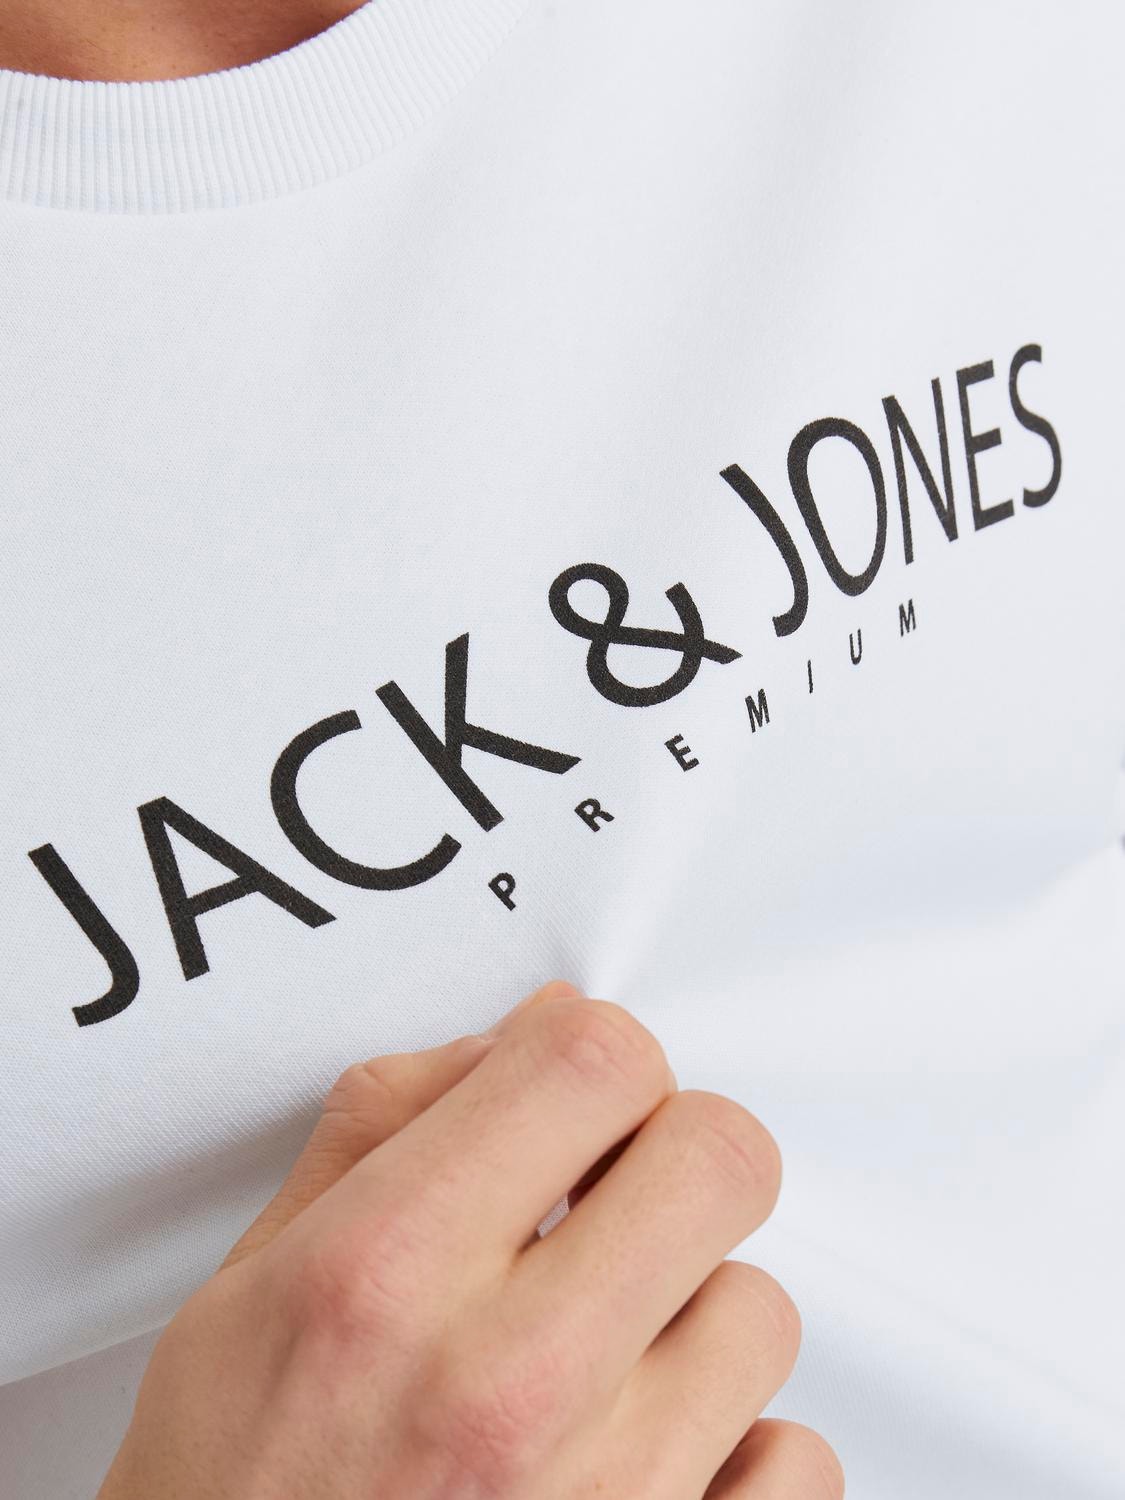 Jack & Jones Sweat à col rond Imprimé -Bright White - 12256972